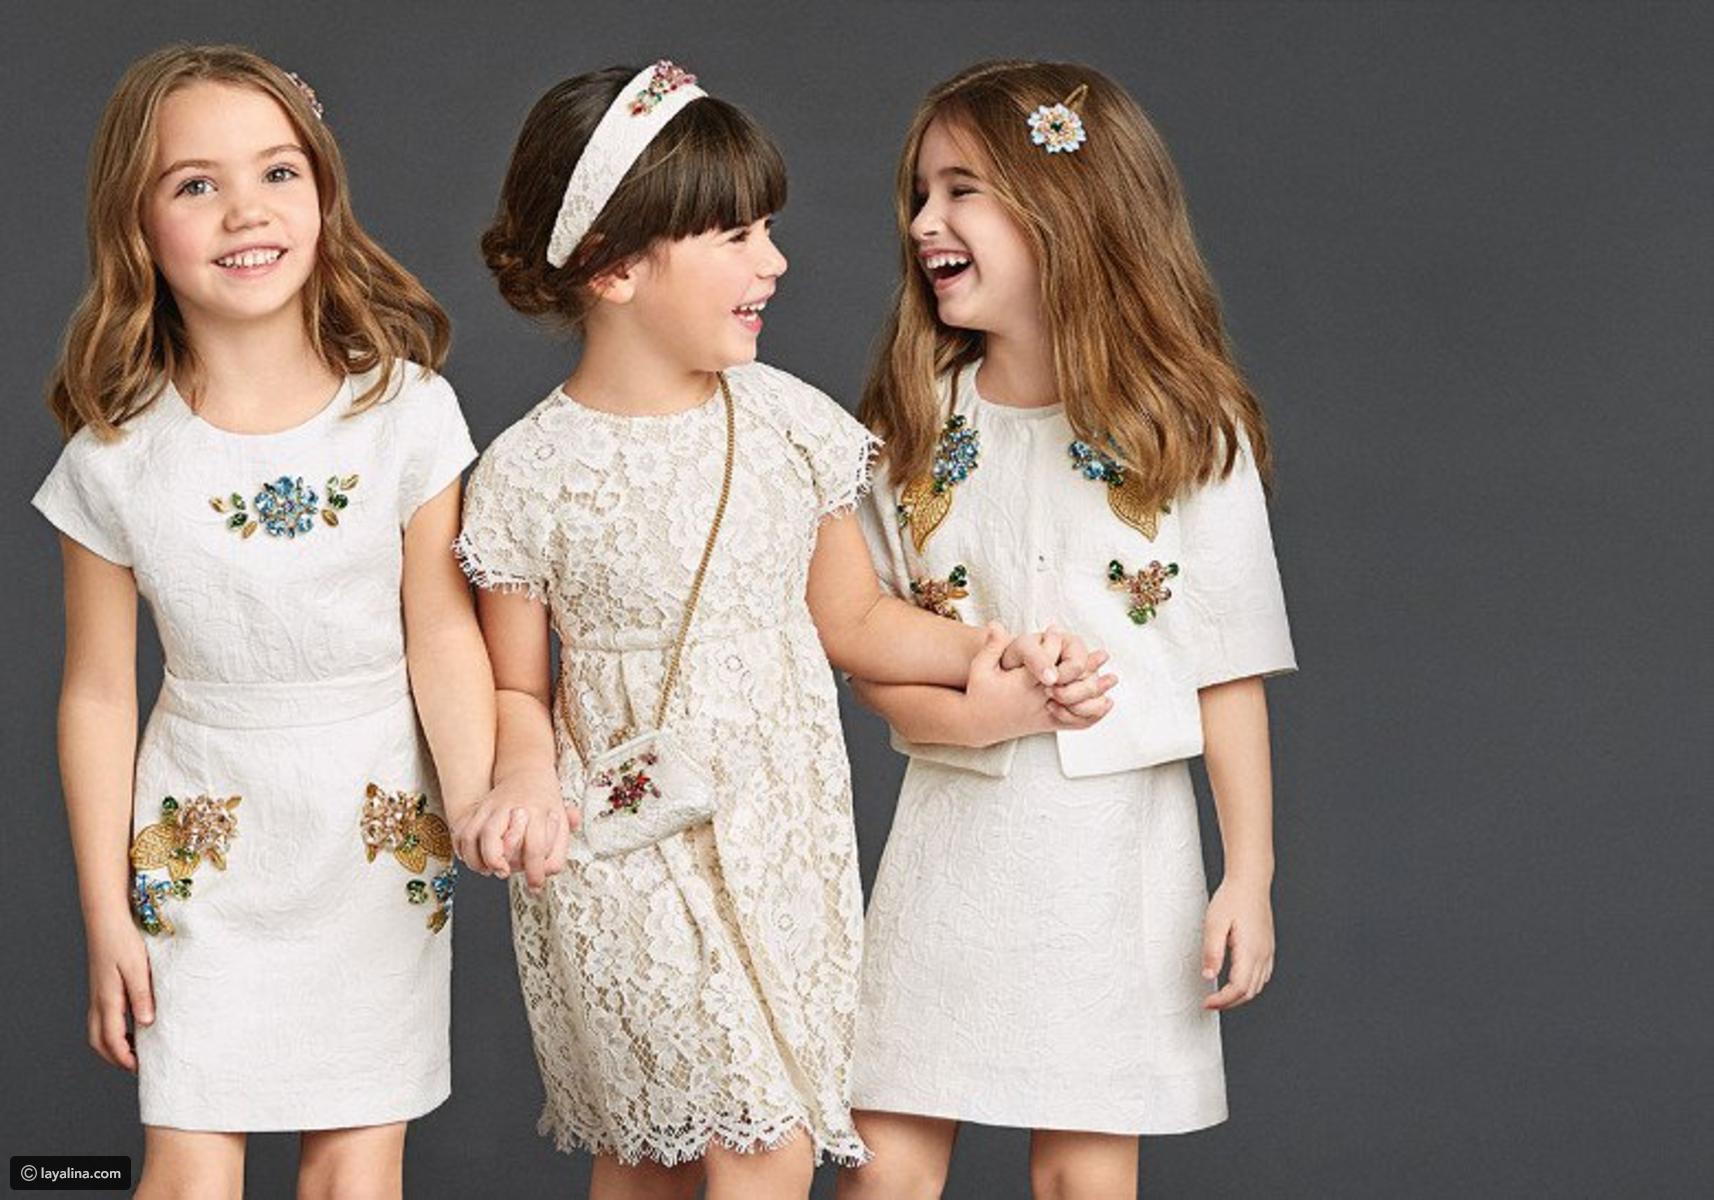 تسويق ملابس اطفال .. 7 نصائح من الخبراء تضمن لك النجاح |معروف